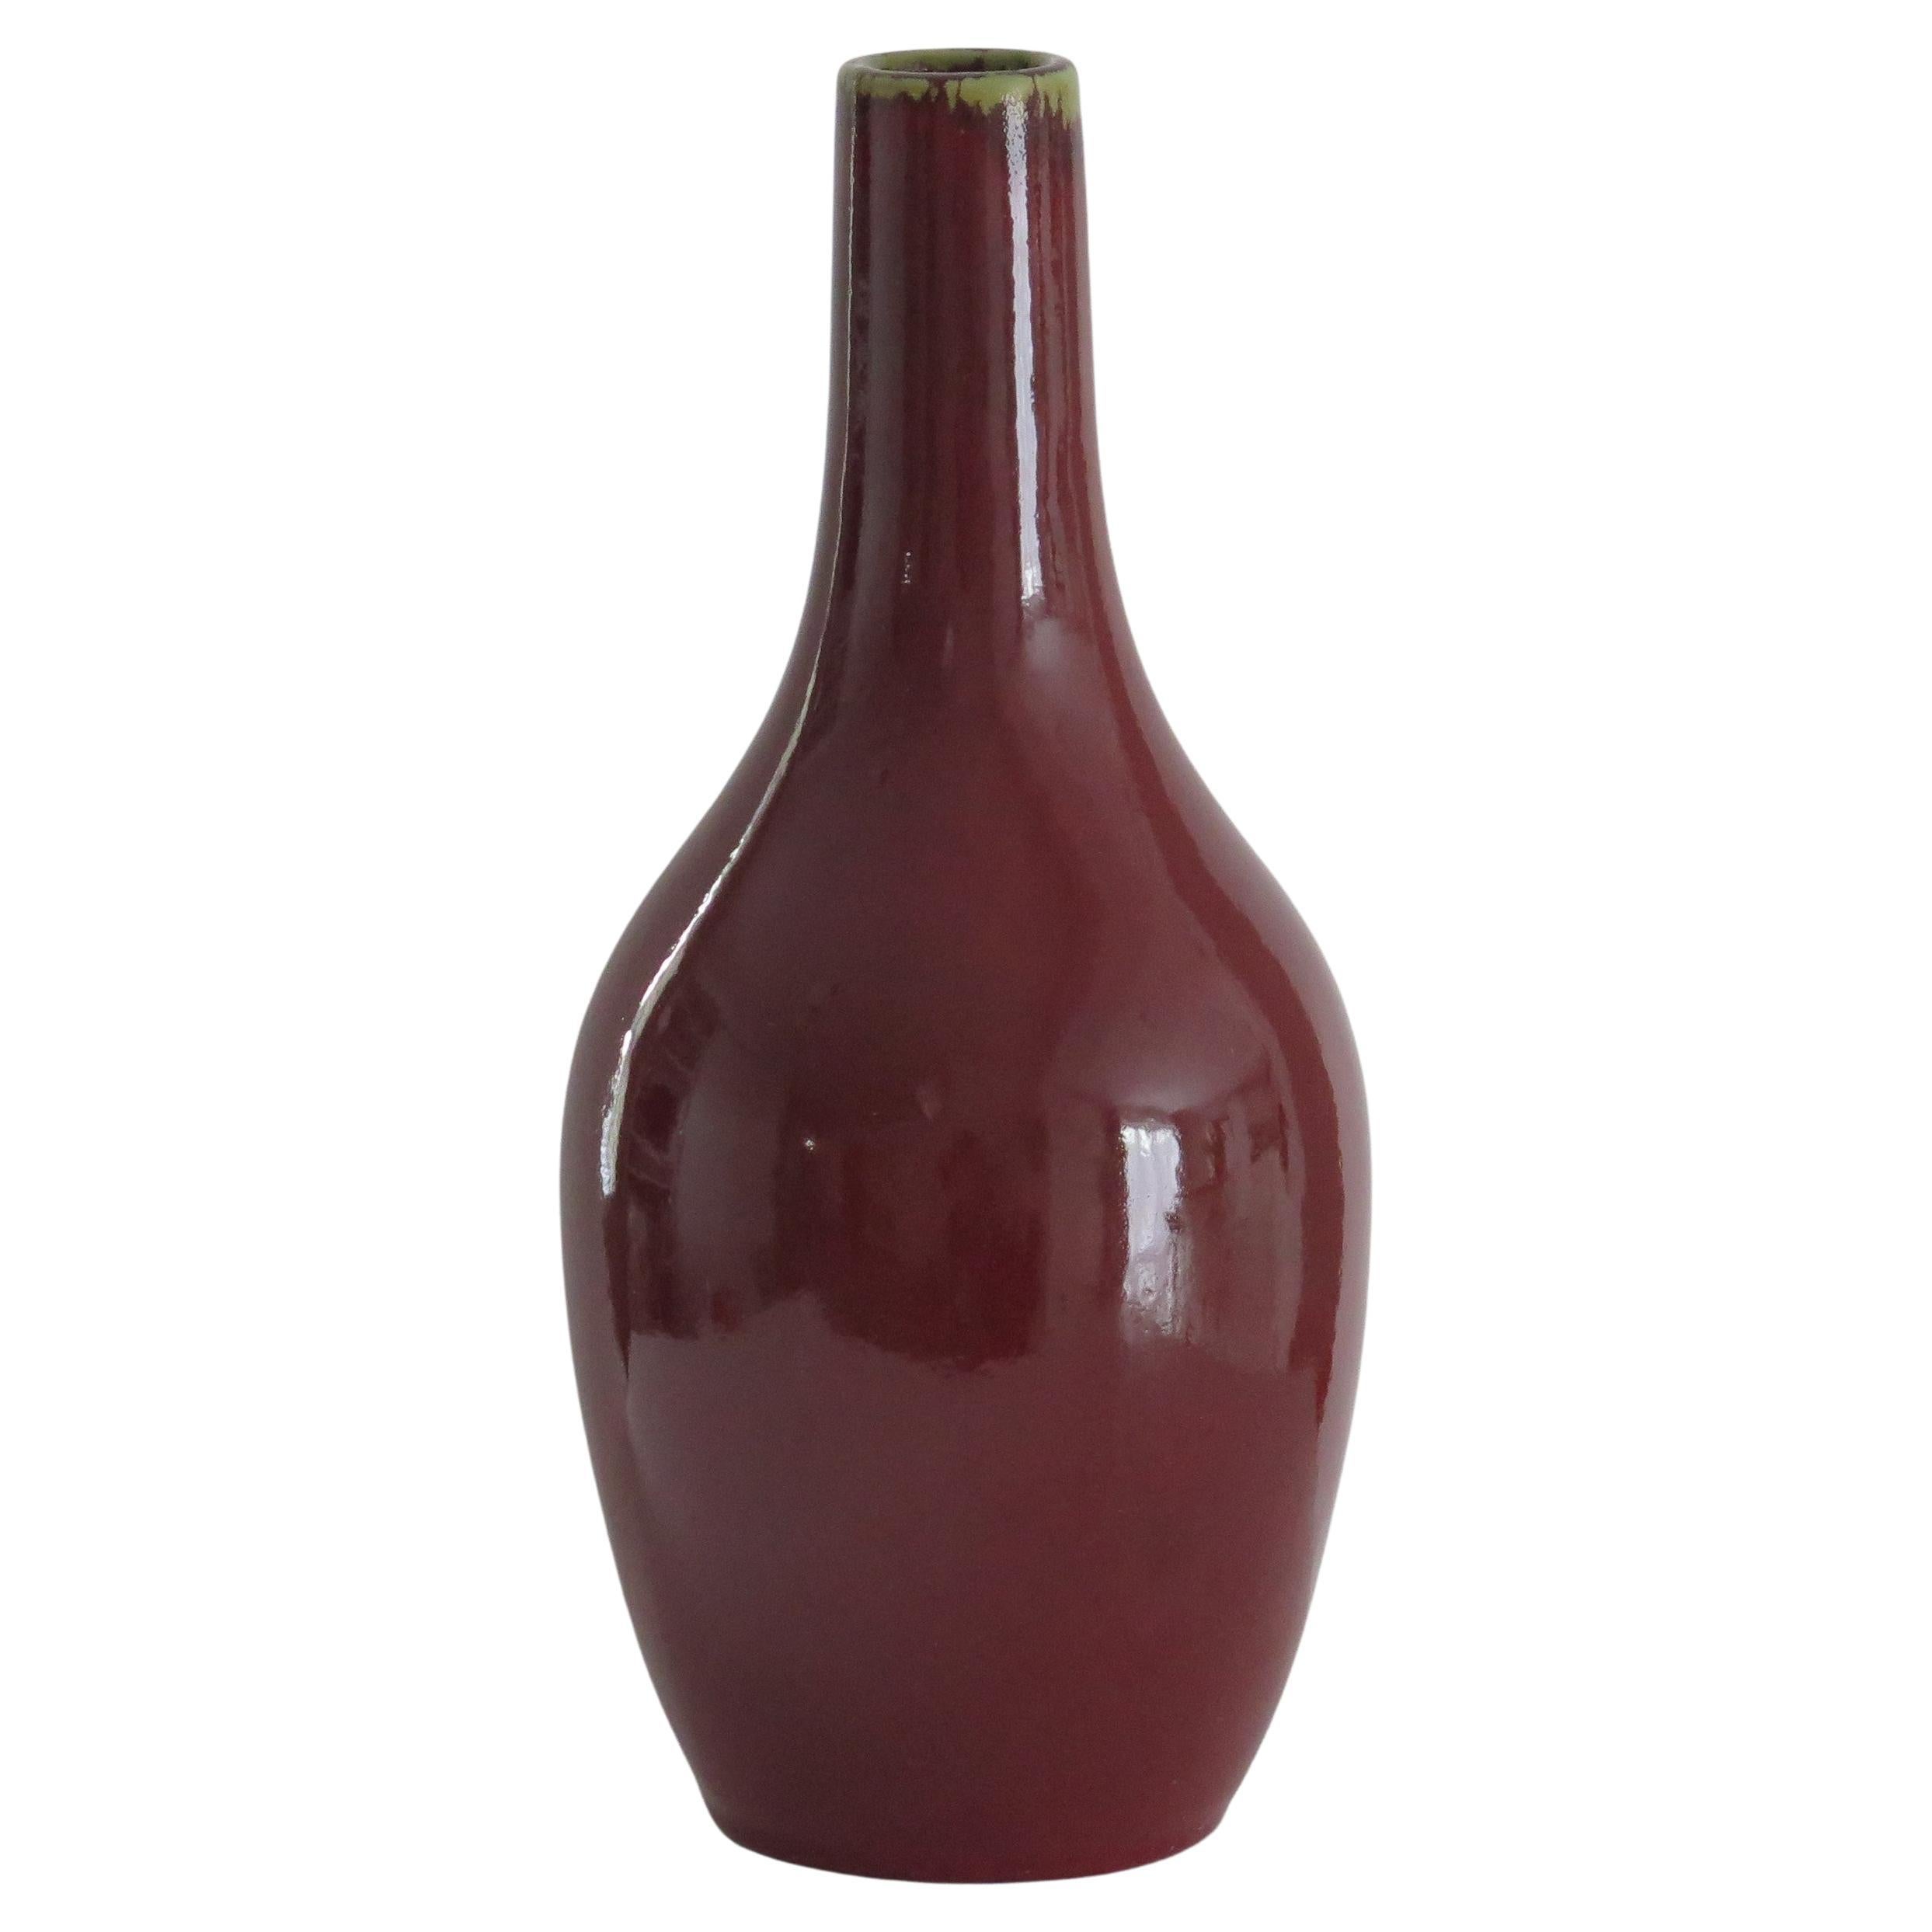 Grand vase en porcelaine d'exportation chinoise du 19e siècle  "Sang-de-bœuf" rouge sang de bœuf, Qing 